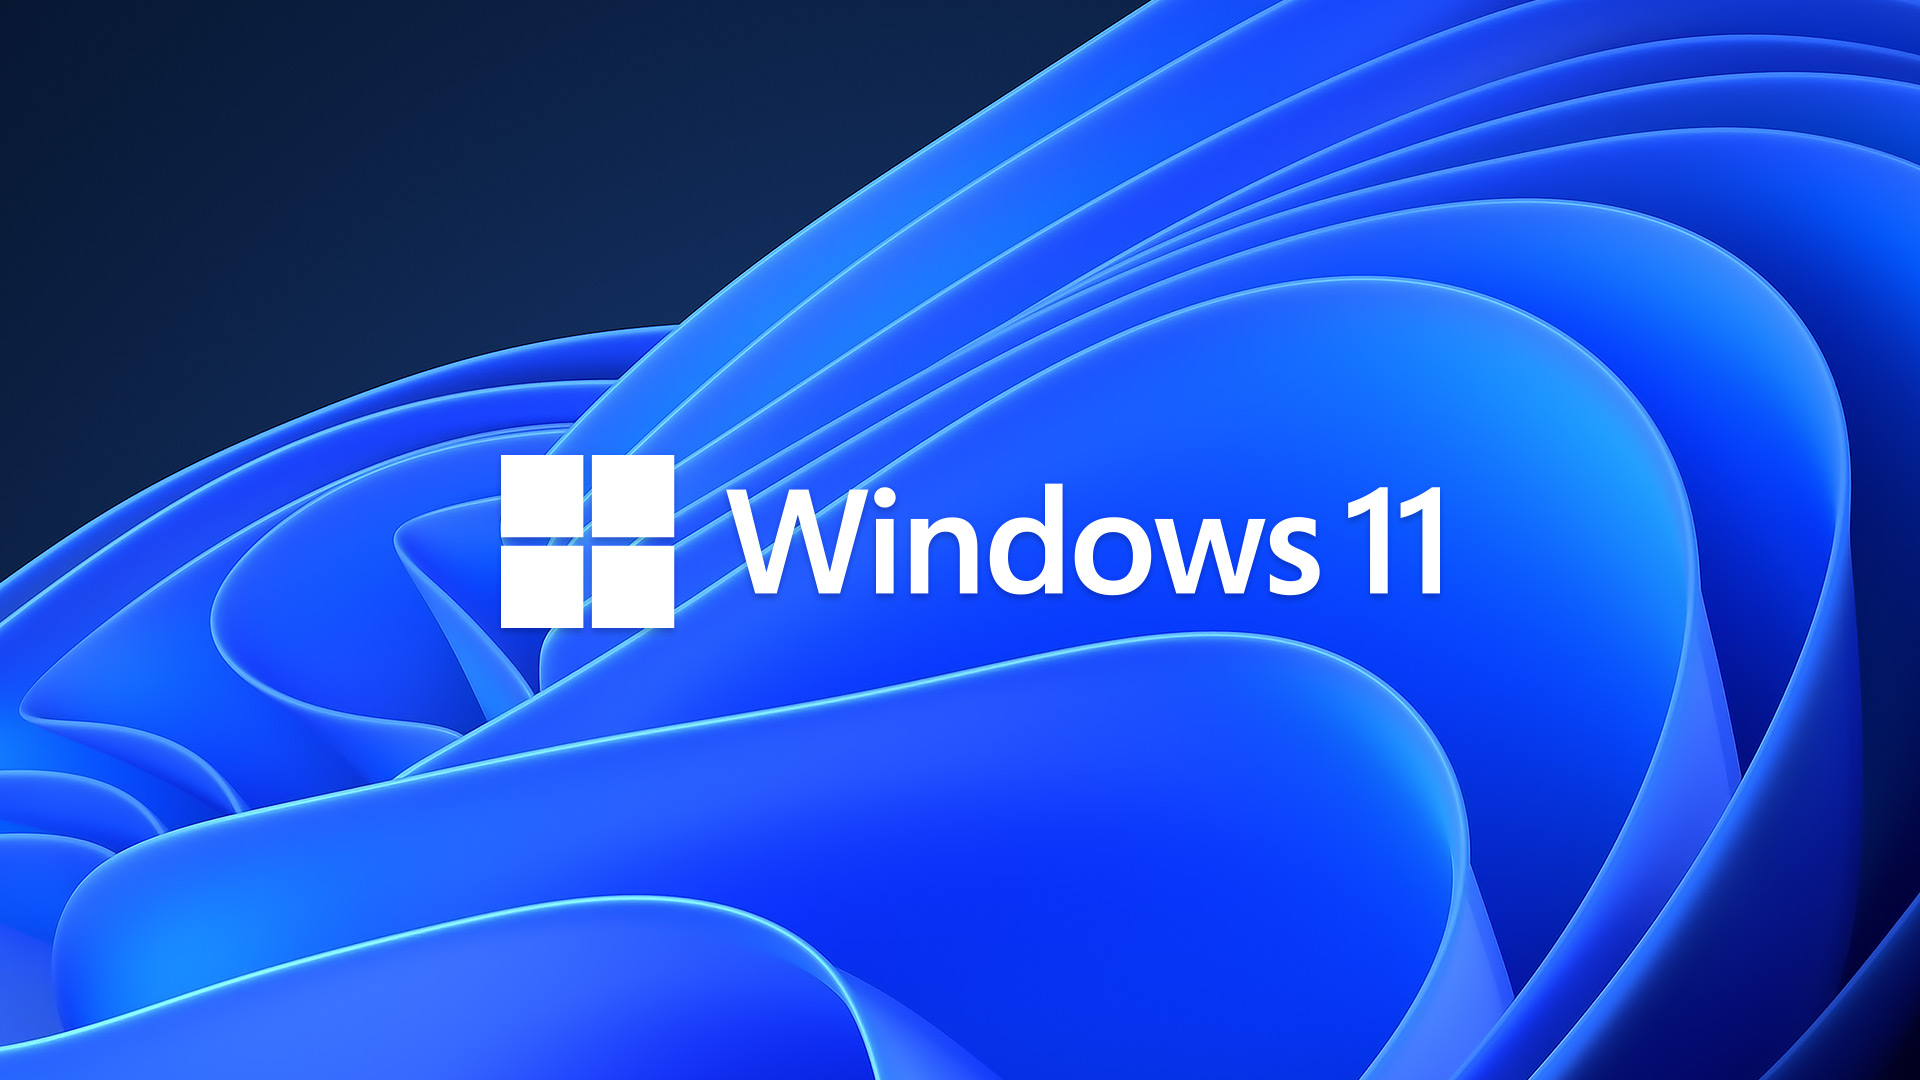 Νέα ένδειξη έντασης ήχου θα αποκτήσουν τα Windows 11